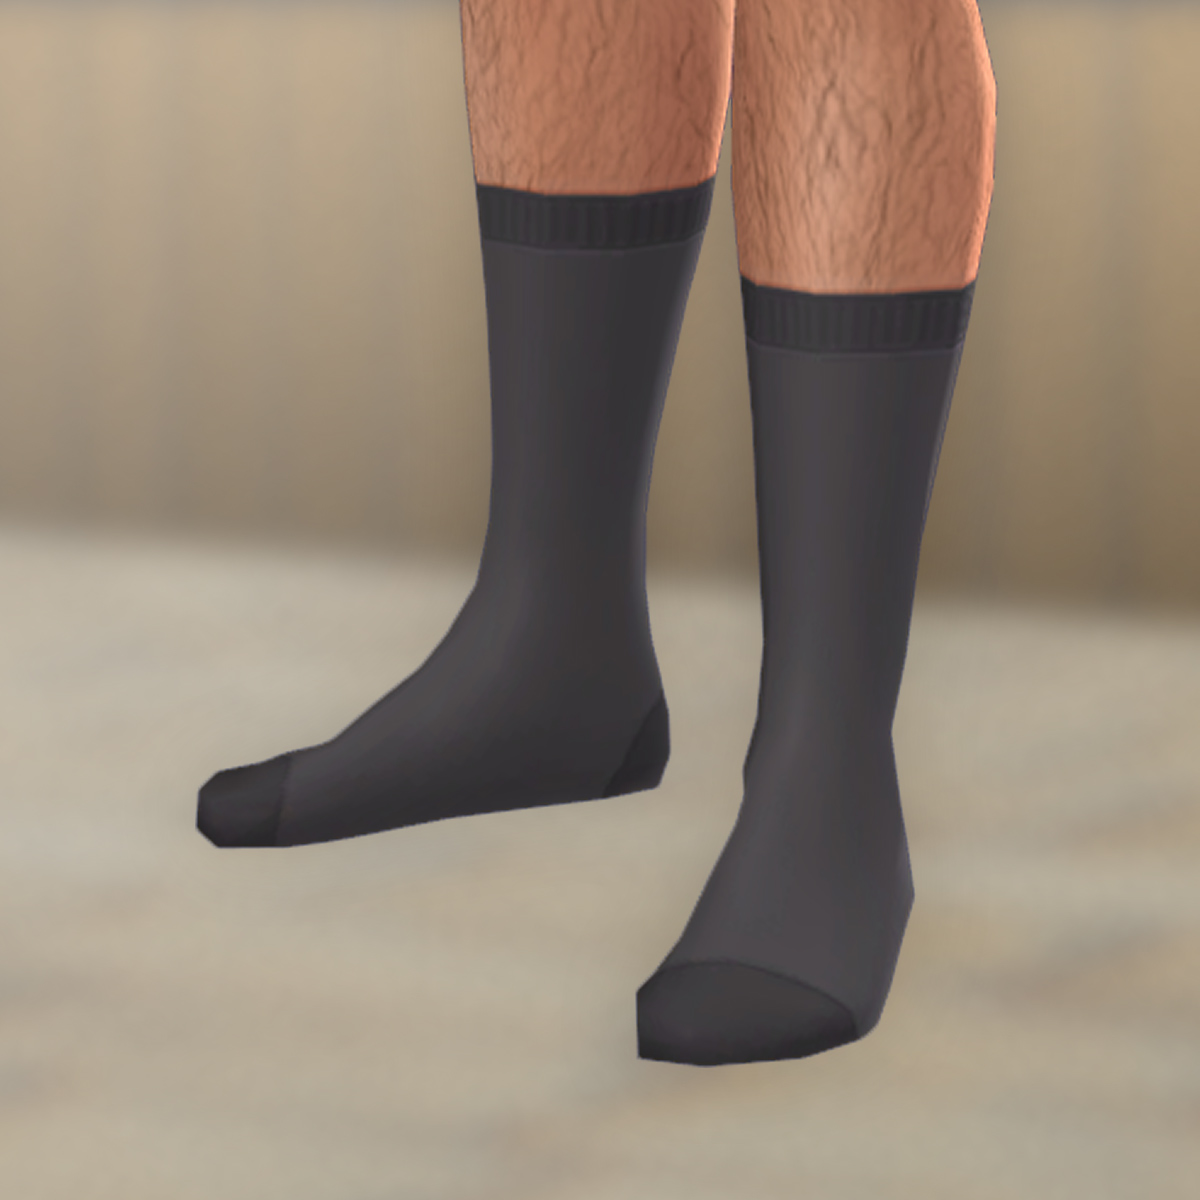 QICC - Oikawa Socks - Create a Sim - The Sims 4 - CurseForge